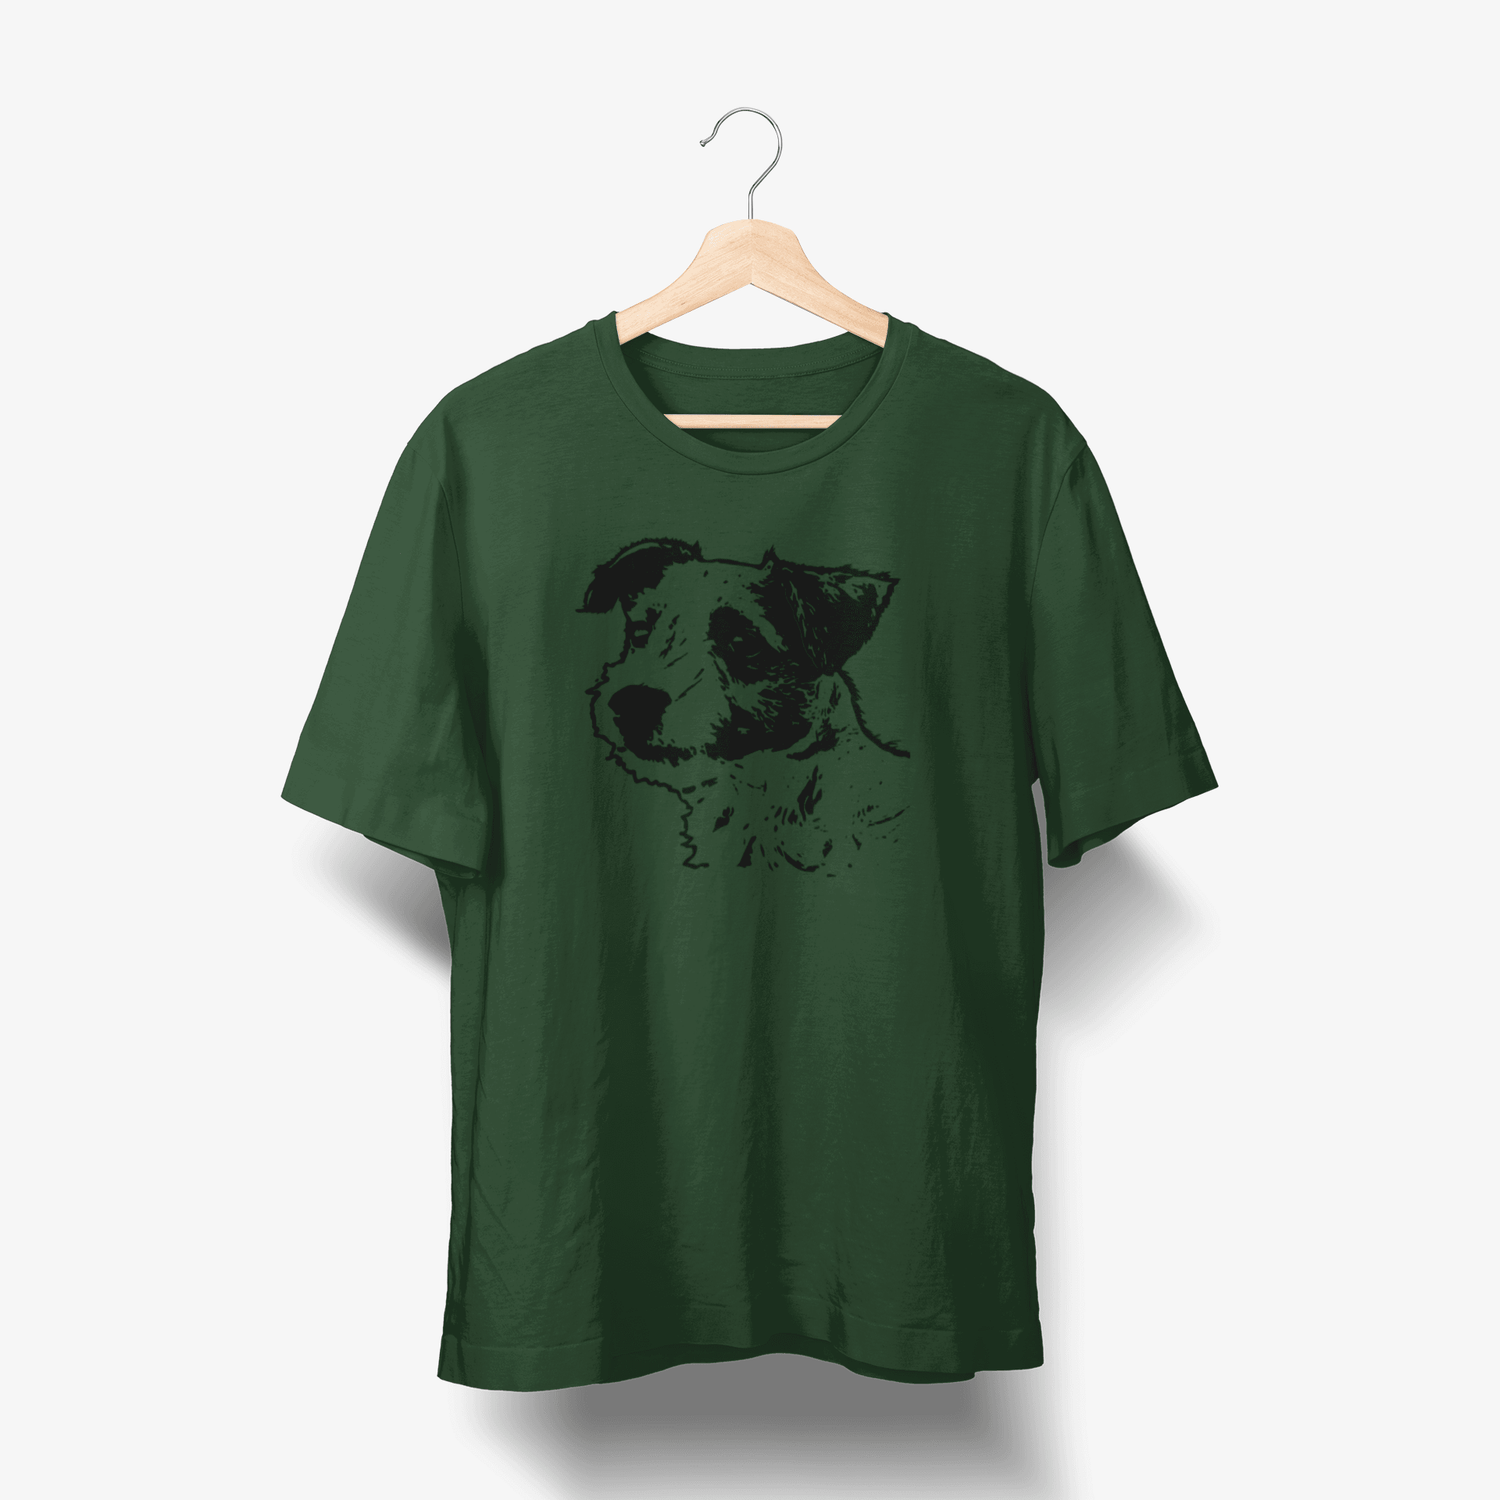 Parson-Russell-Terrier T-shirt